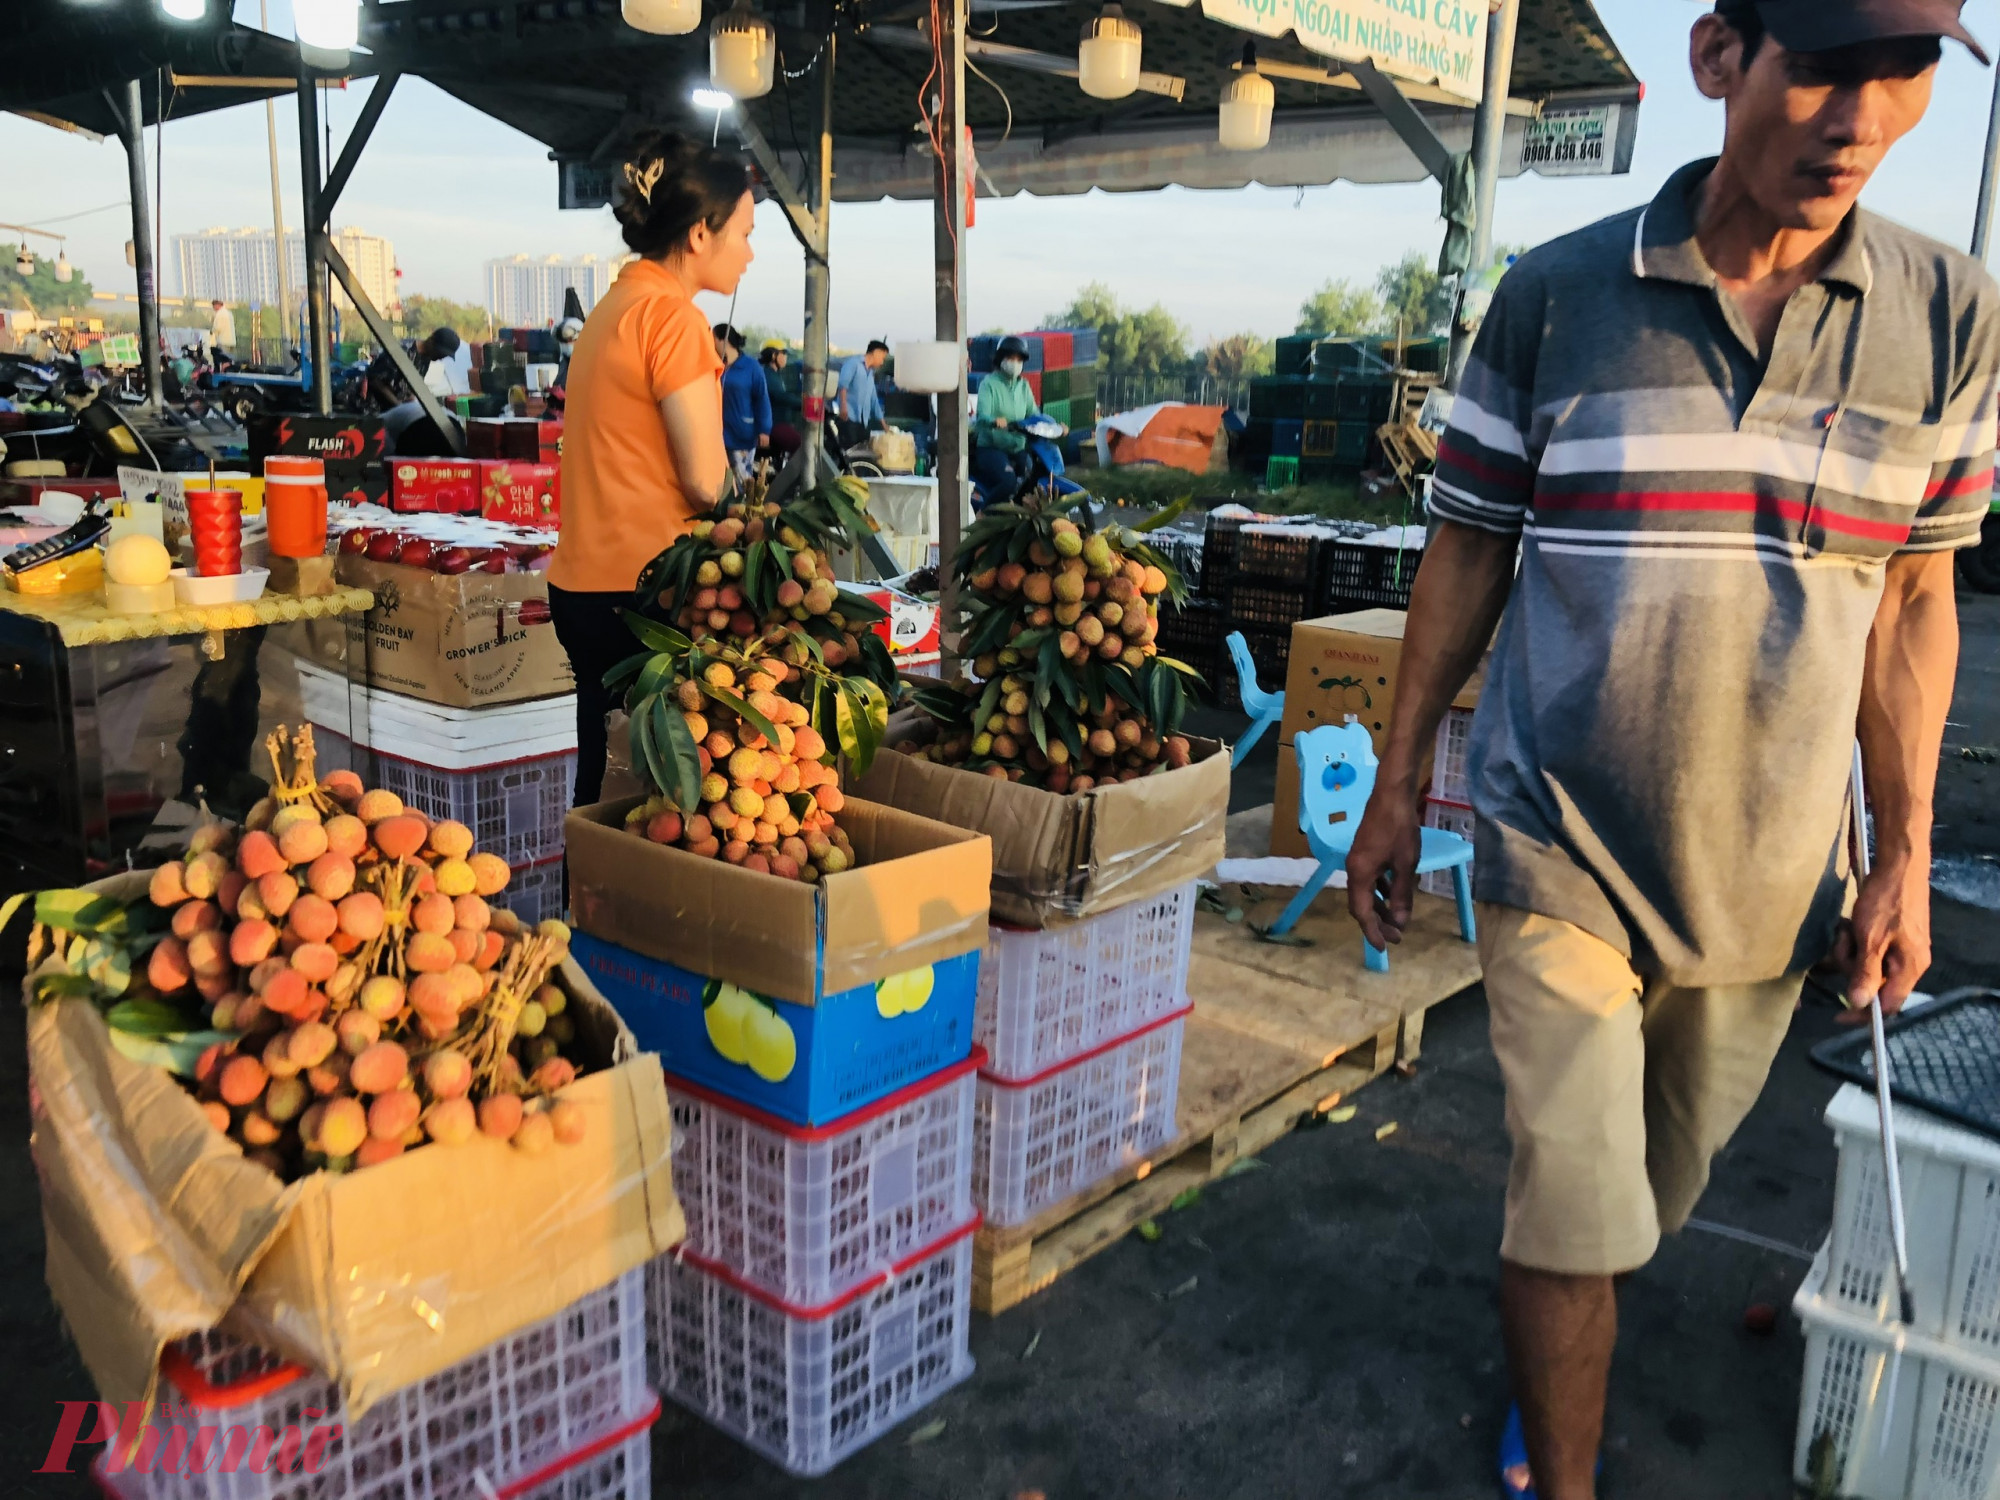 Bình thường, trong khoảng thời gian từ 5-6g sáng, khu vực bán trái cây lẻ tại chợ Bình Điền khá 5-6g giờ sáng, khu vực 